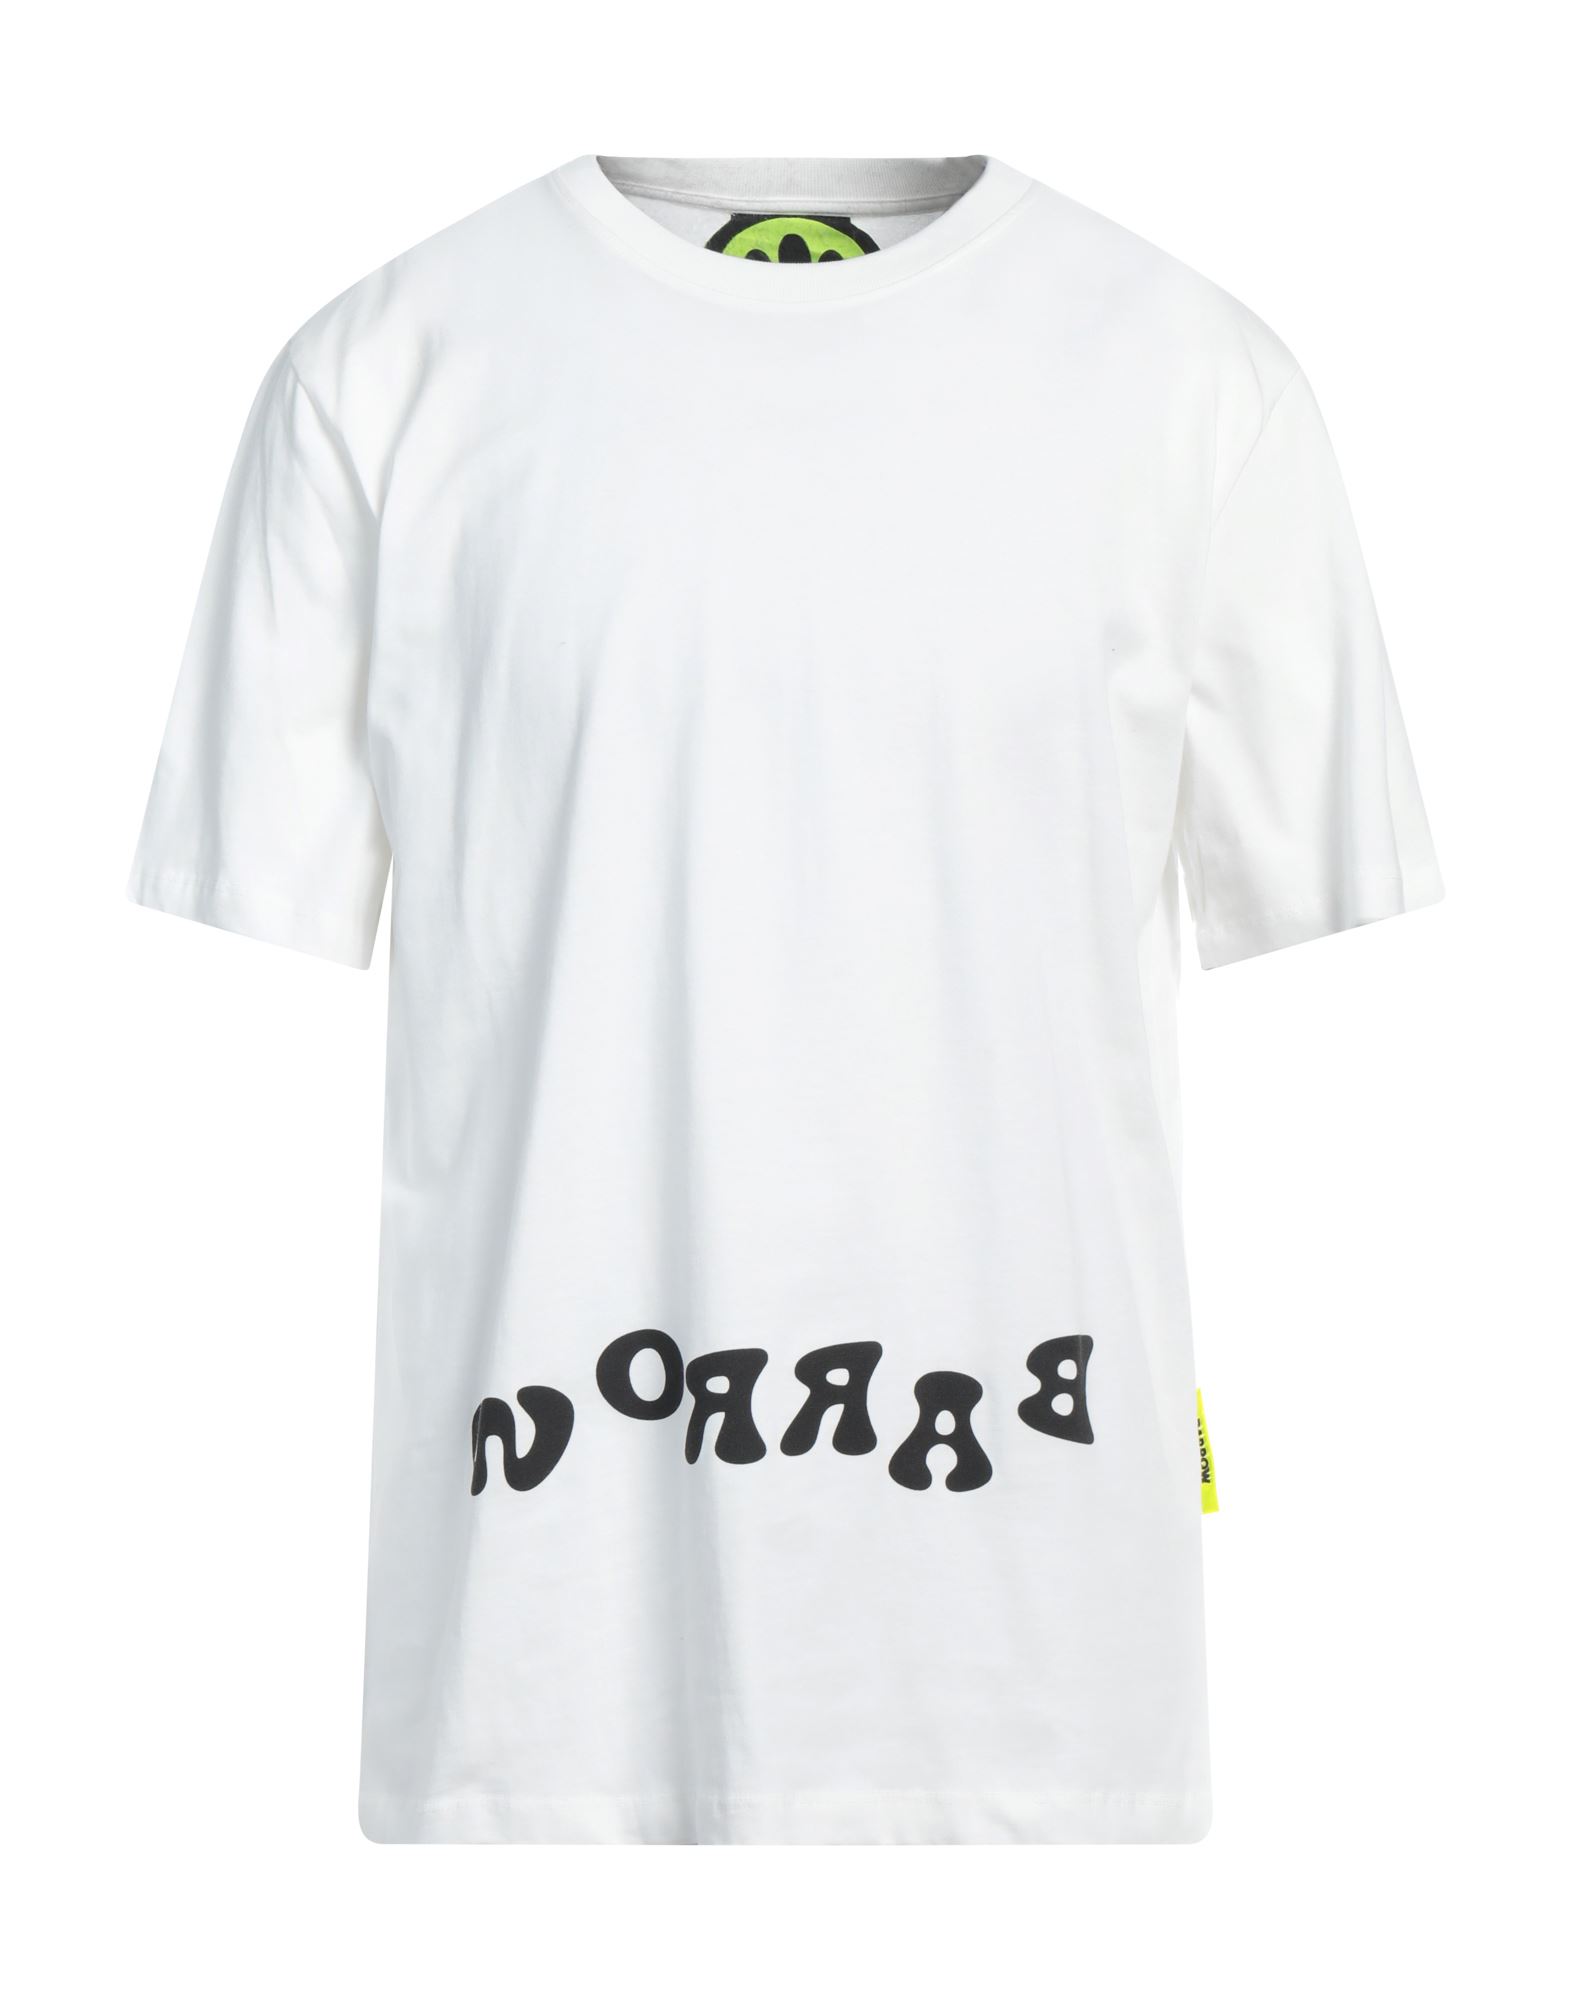 BARROW T-shirts Herren Weiß von BARROW